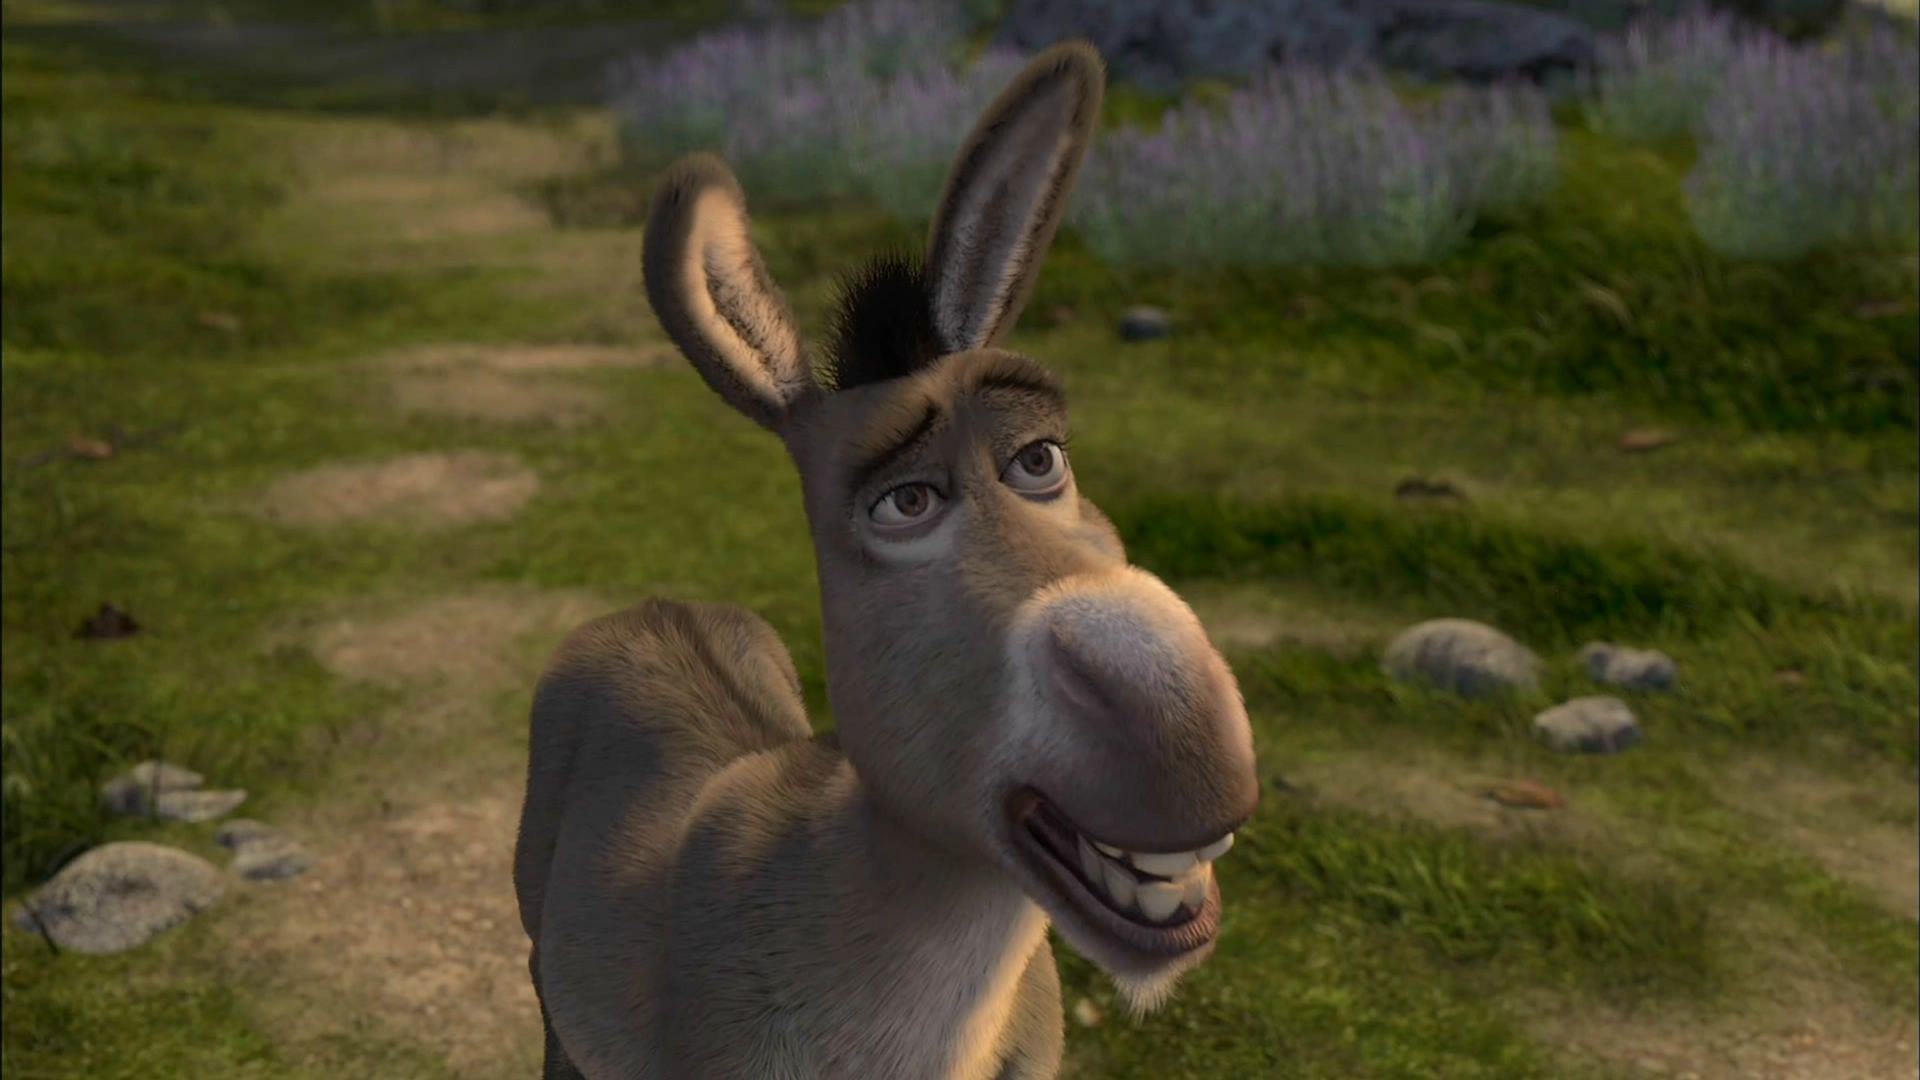 Donkey in Shrek